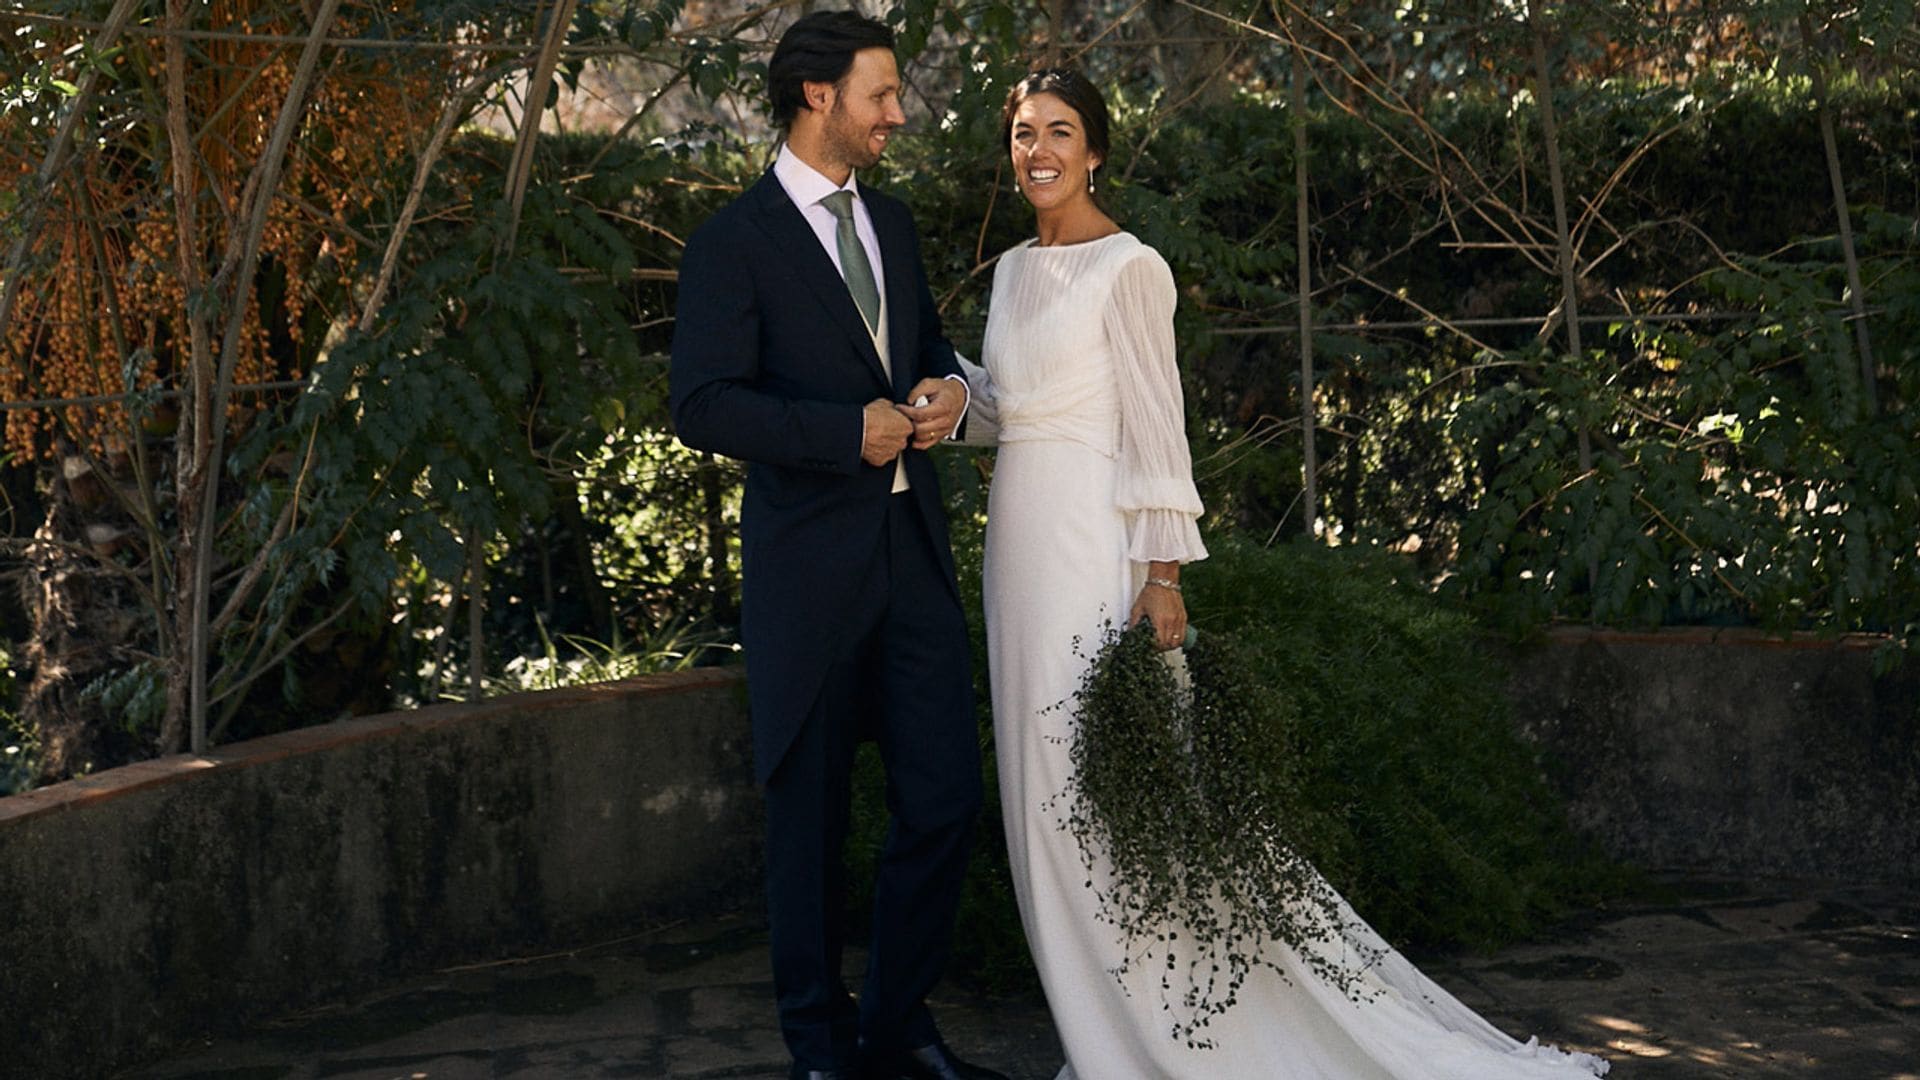 Ana, la novia que se casó en Barcelona con un vestido sencillo y desmontable que marcaba la cintura